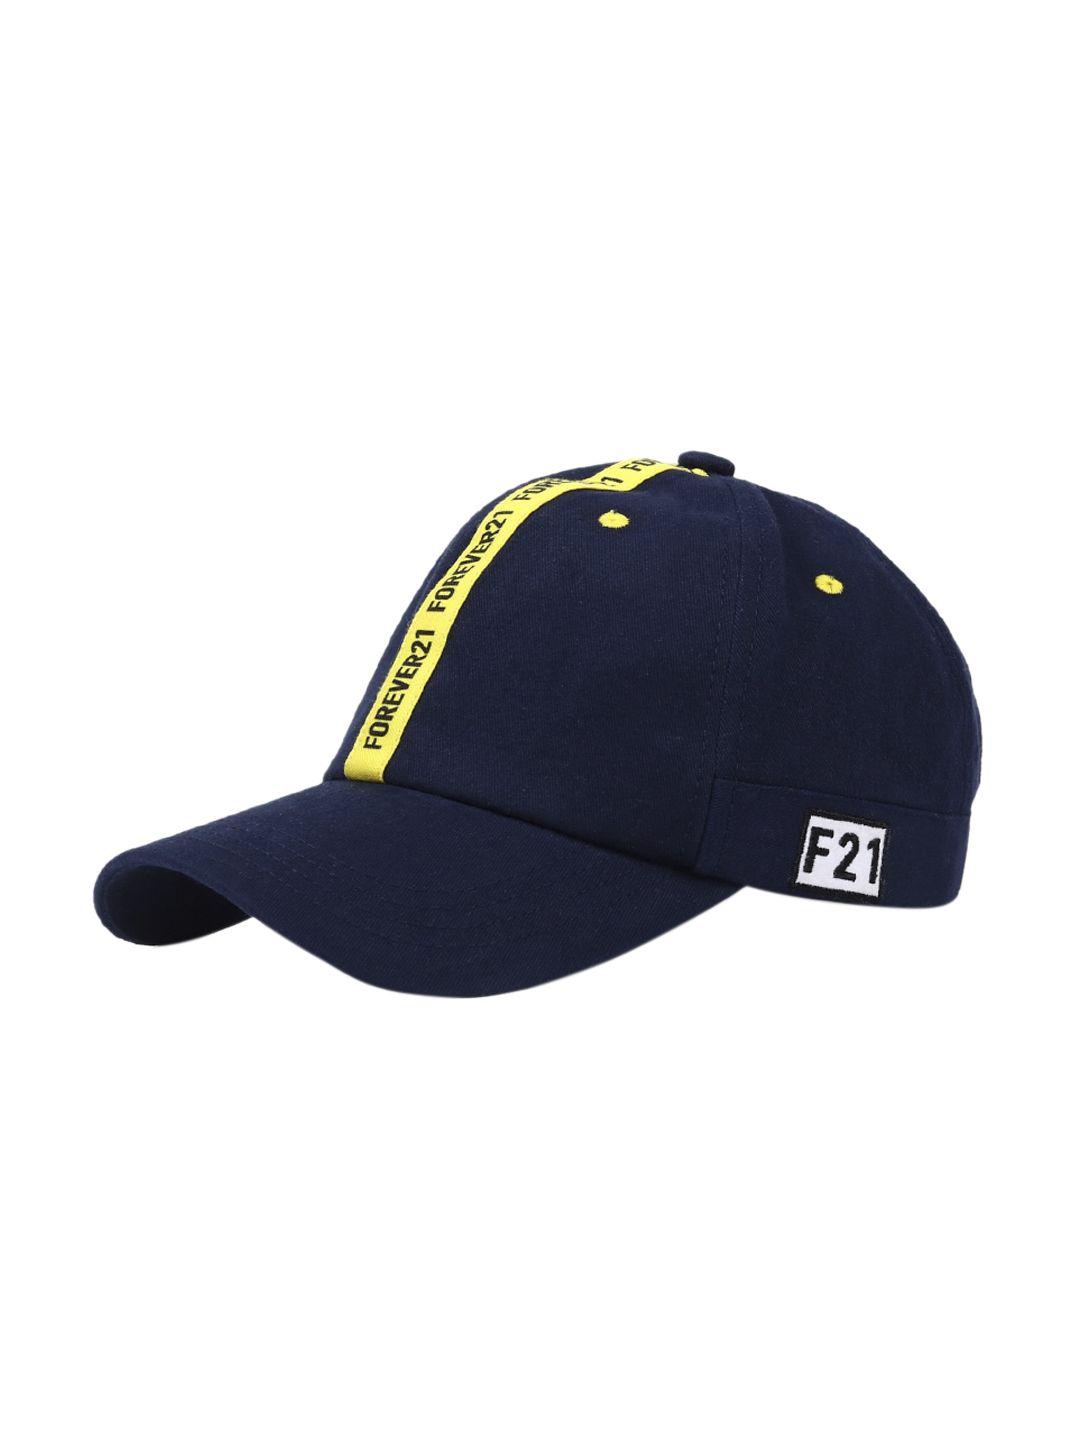 forever-21-men-navy-blue-printed-baseball-cap